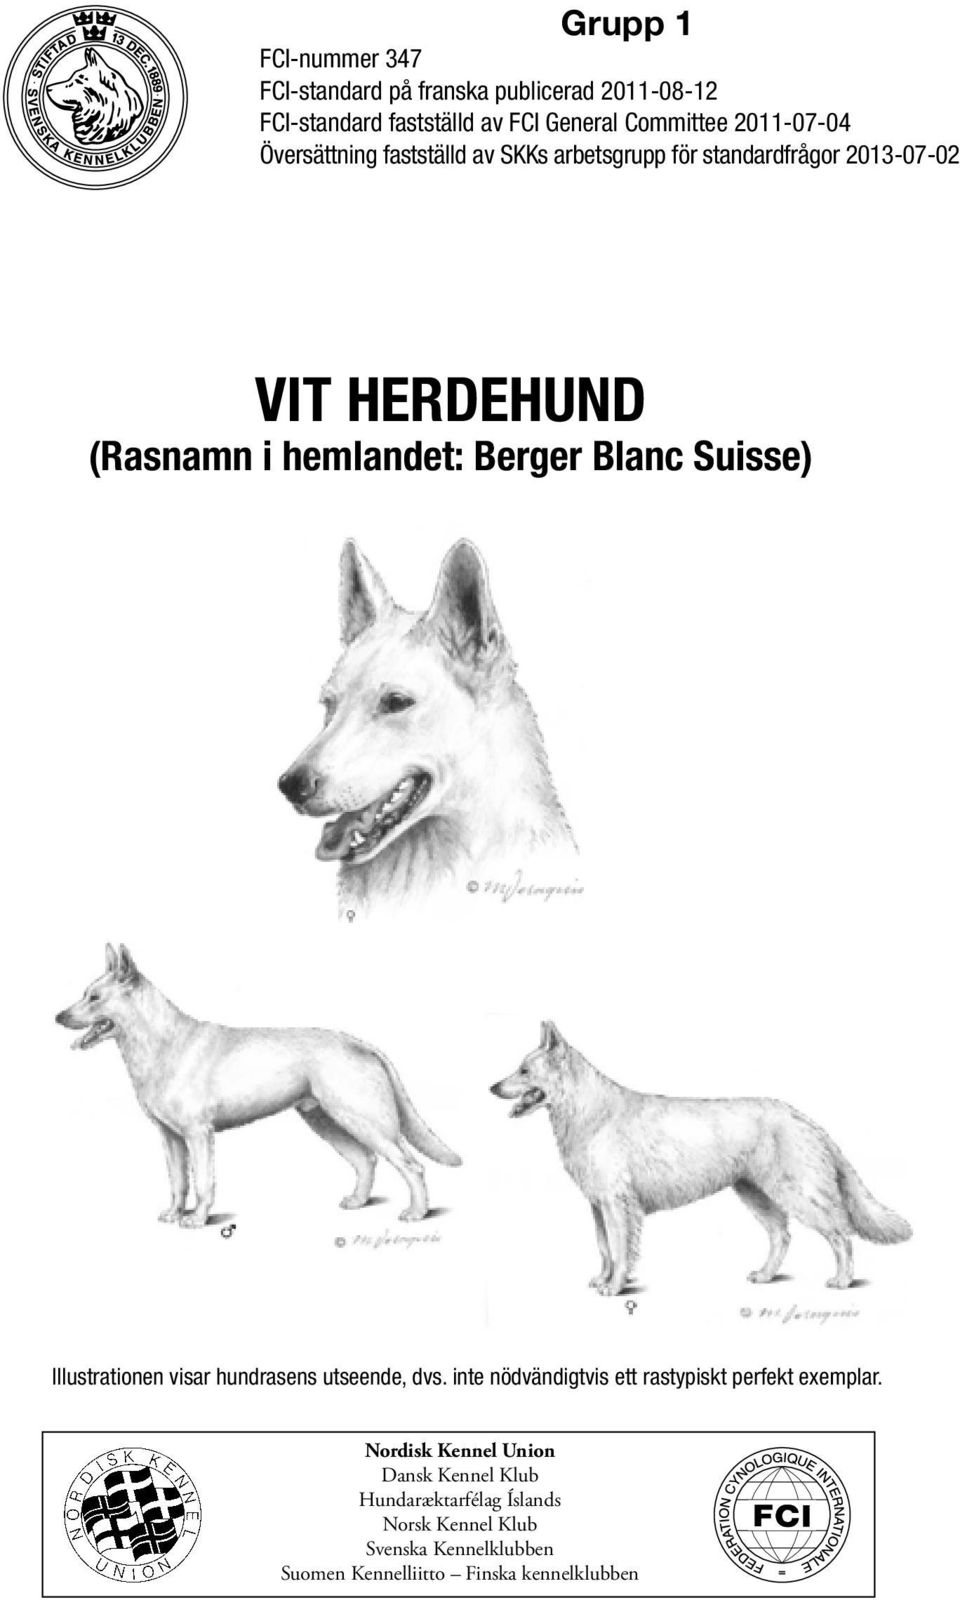 Berger Blanc Suisse) Illustrationen visar hundrasens utseende, dvs. inte nödvändigtvis ett rastypiskt perfekt exemplar.